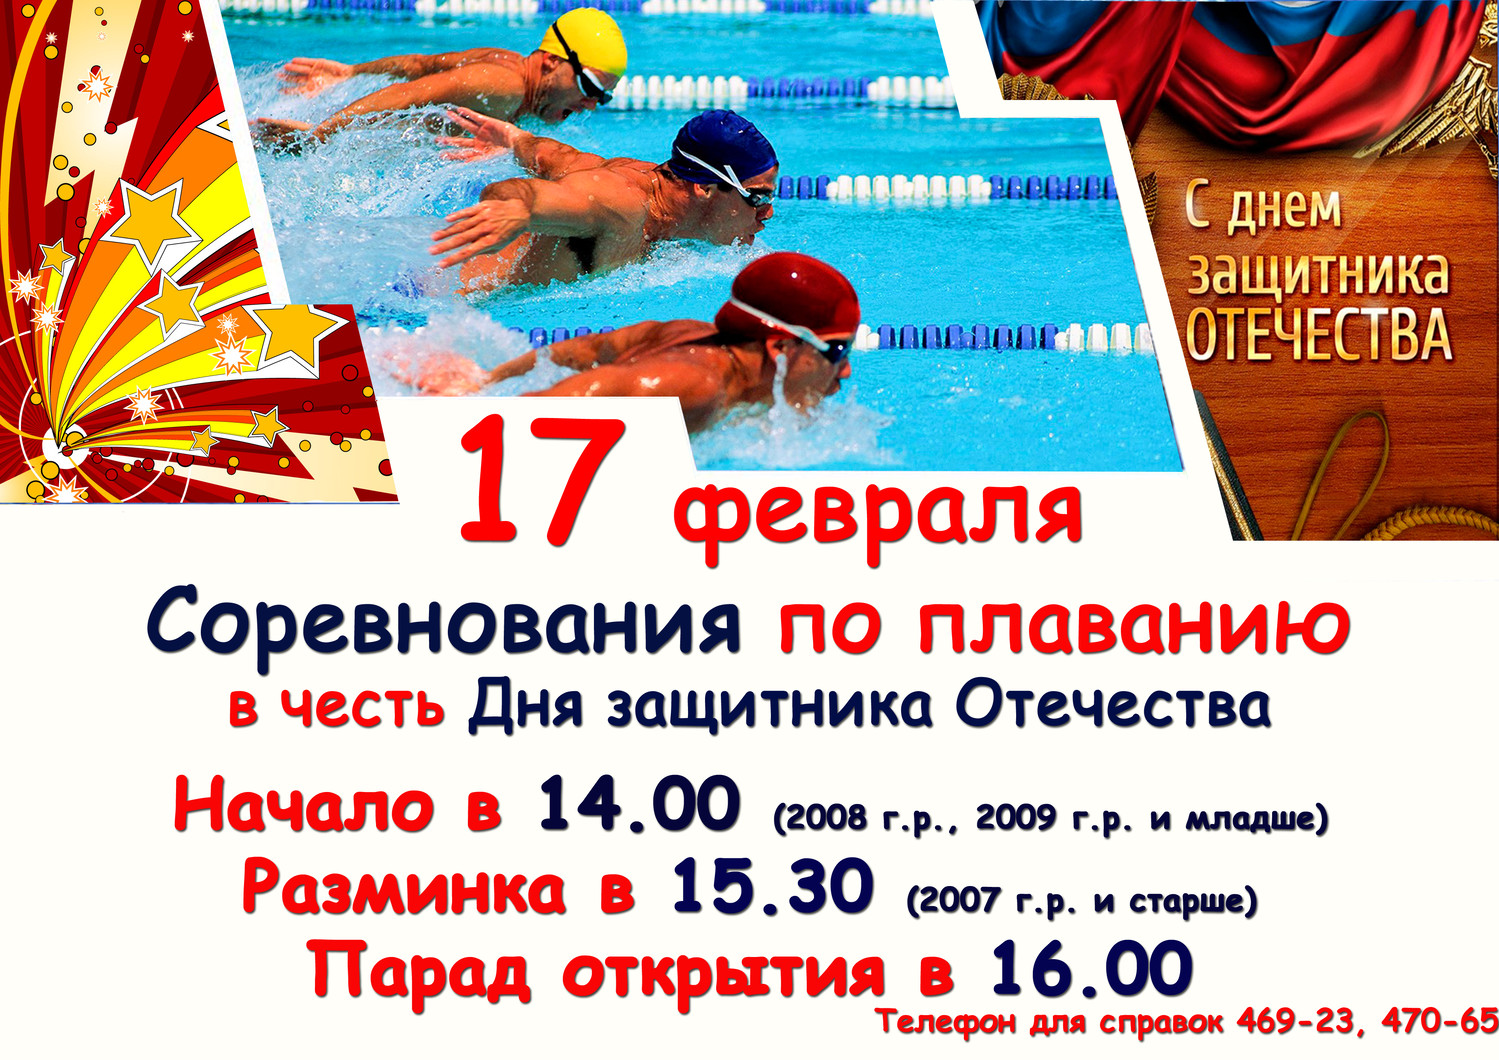 17 февраля состоятся соревнования по плаванию в честь Дня защитника Отечества